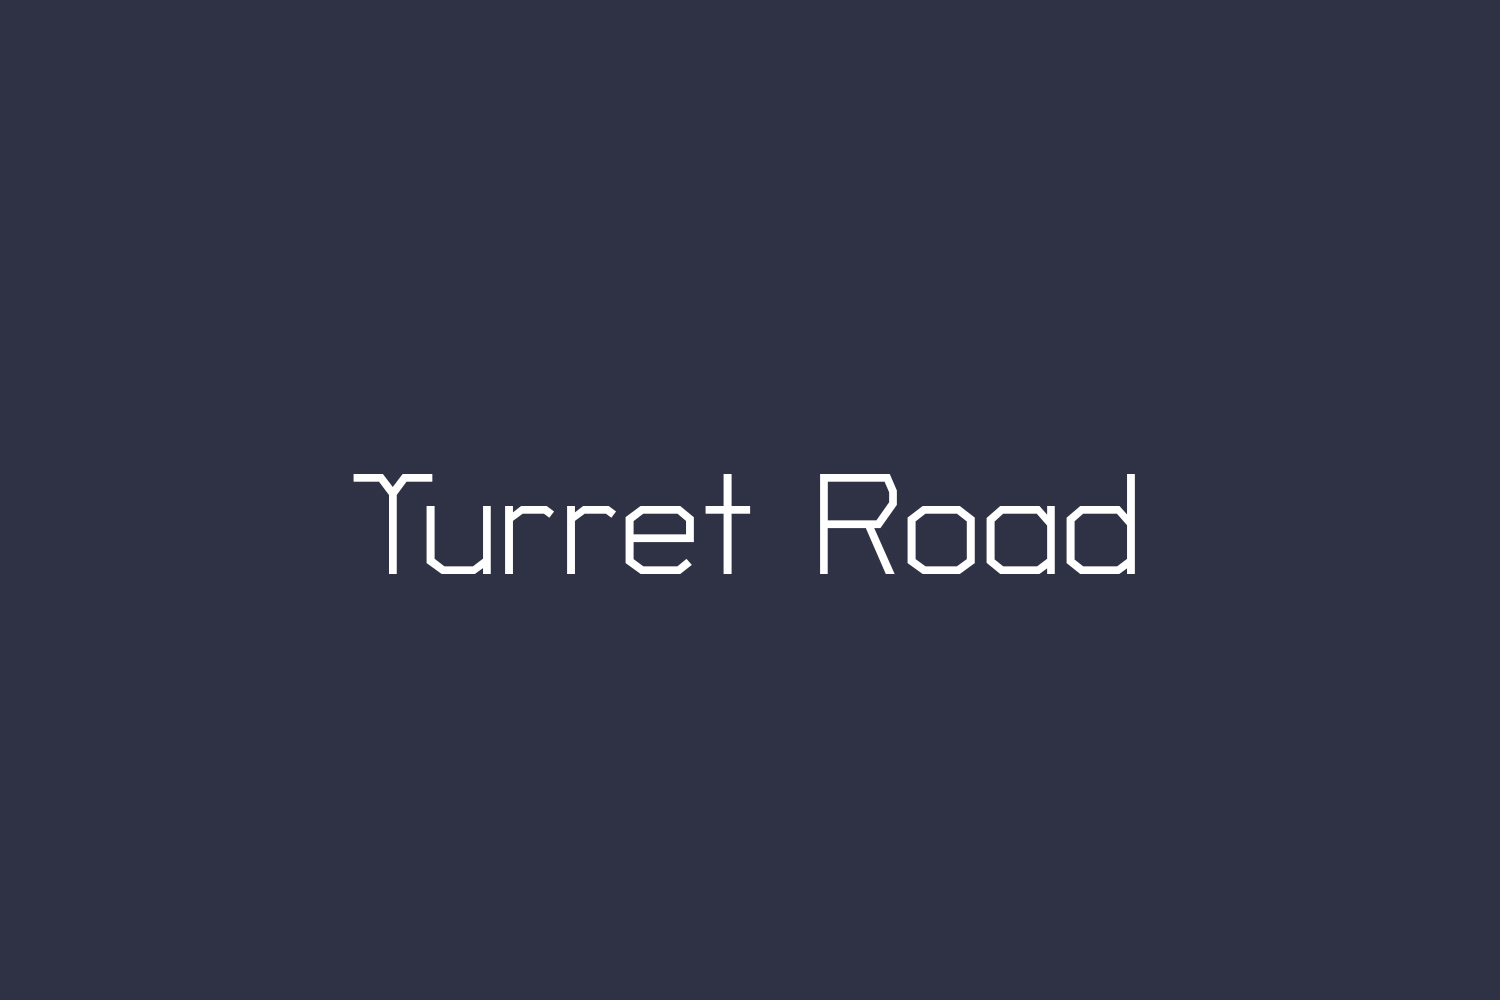 Turret Road